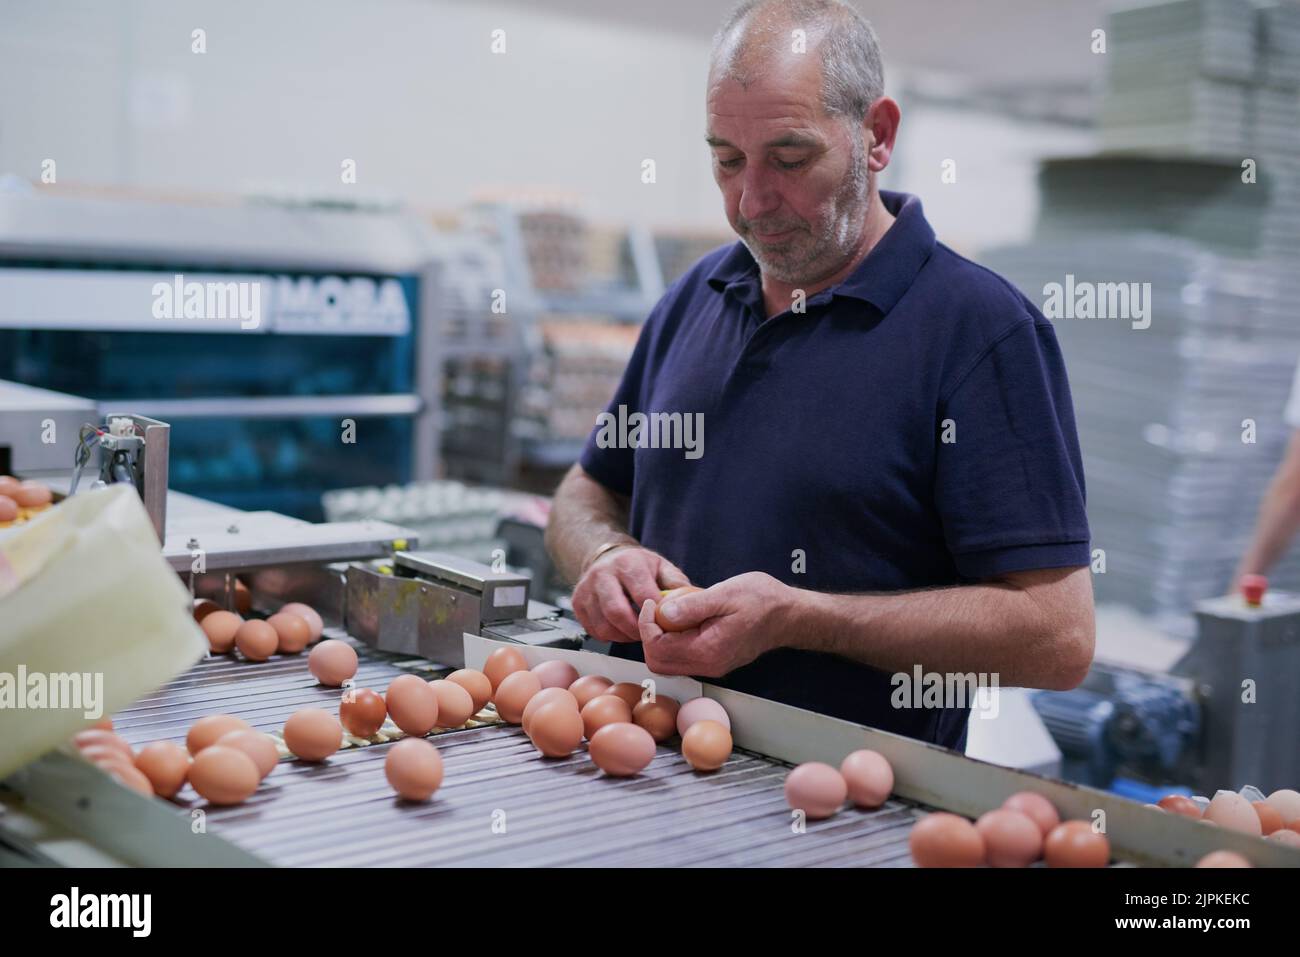 Tengo que asegurarse de que estos huevos son de gran calidad. Un trabajador maduro y centrado en la fabricación, clasificando los huevos de pollo en una cinta transportadora dentro de una fábrica. Foto de stock